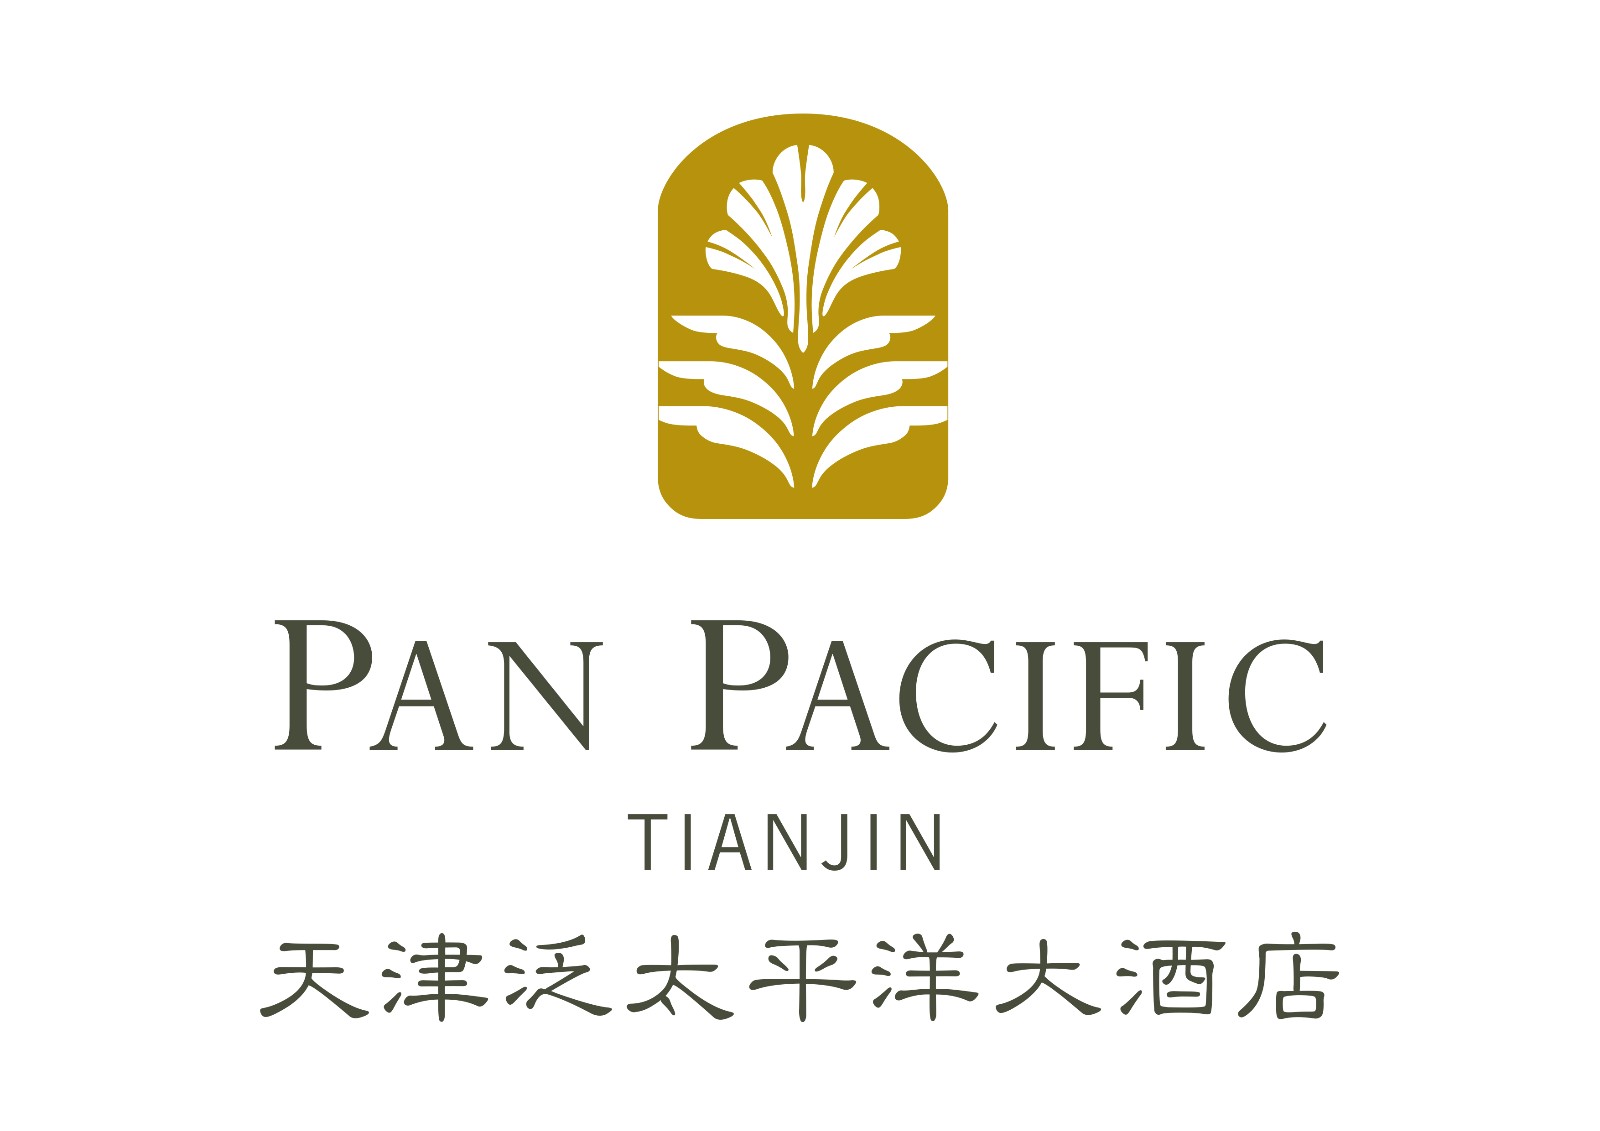 Pan Pacific Beijing & Tianjin